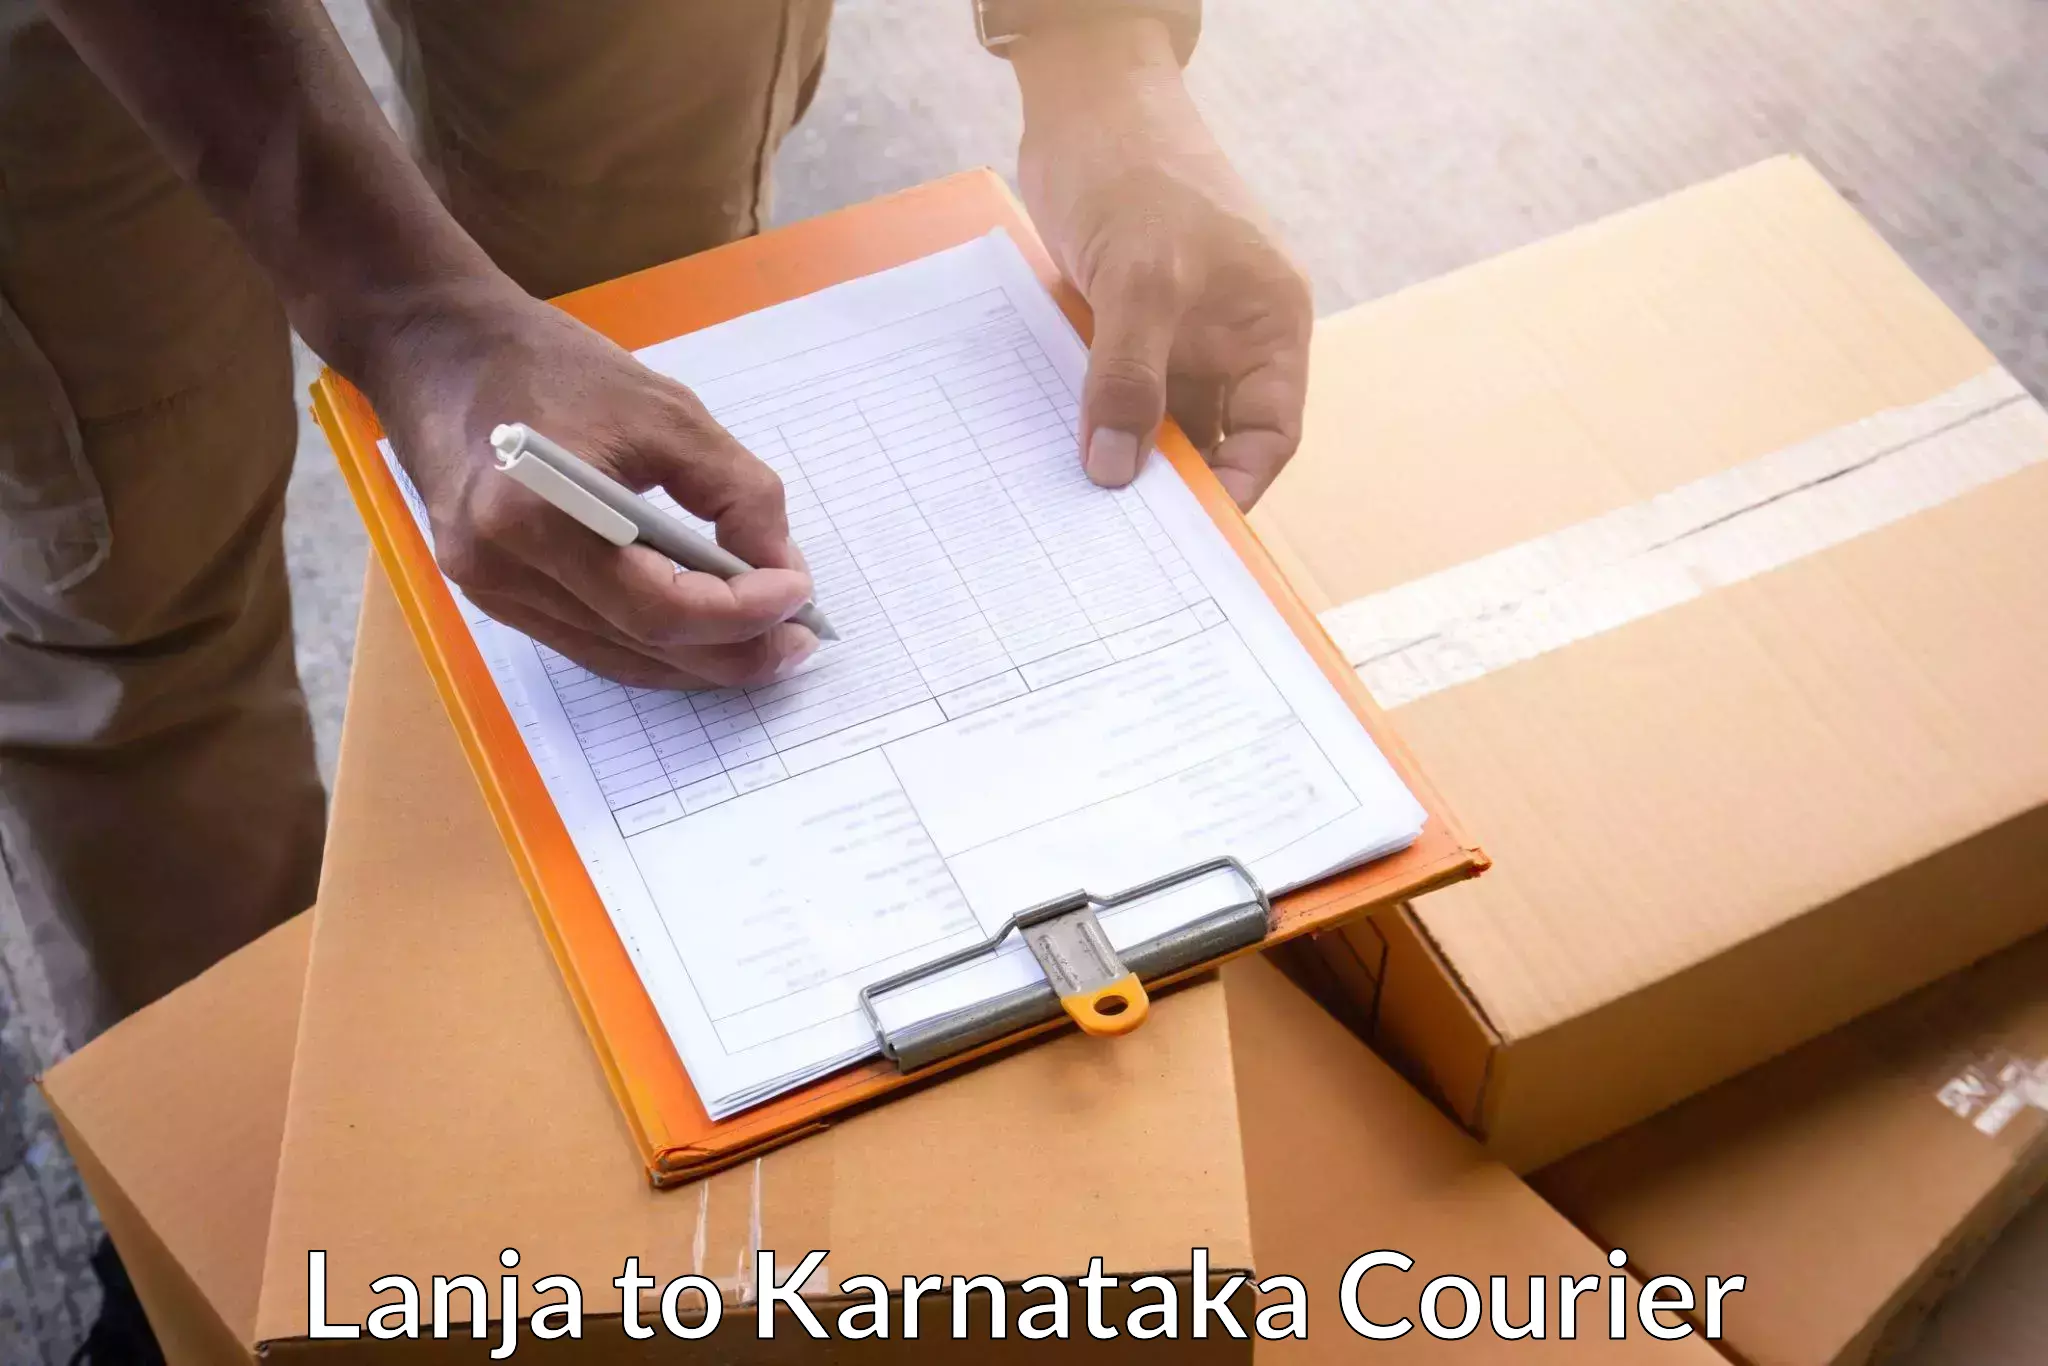 Dynamic courier services in Lanja to Karnataka